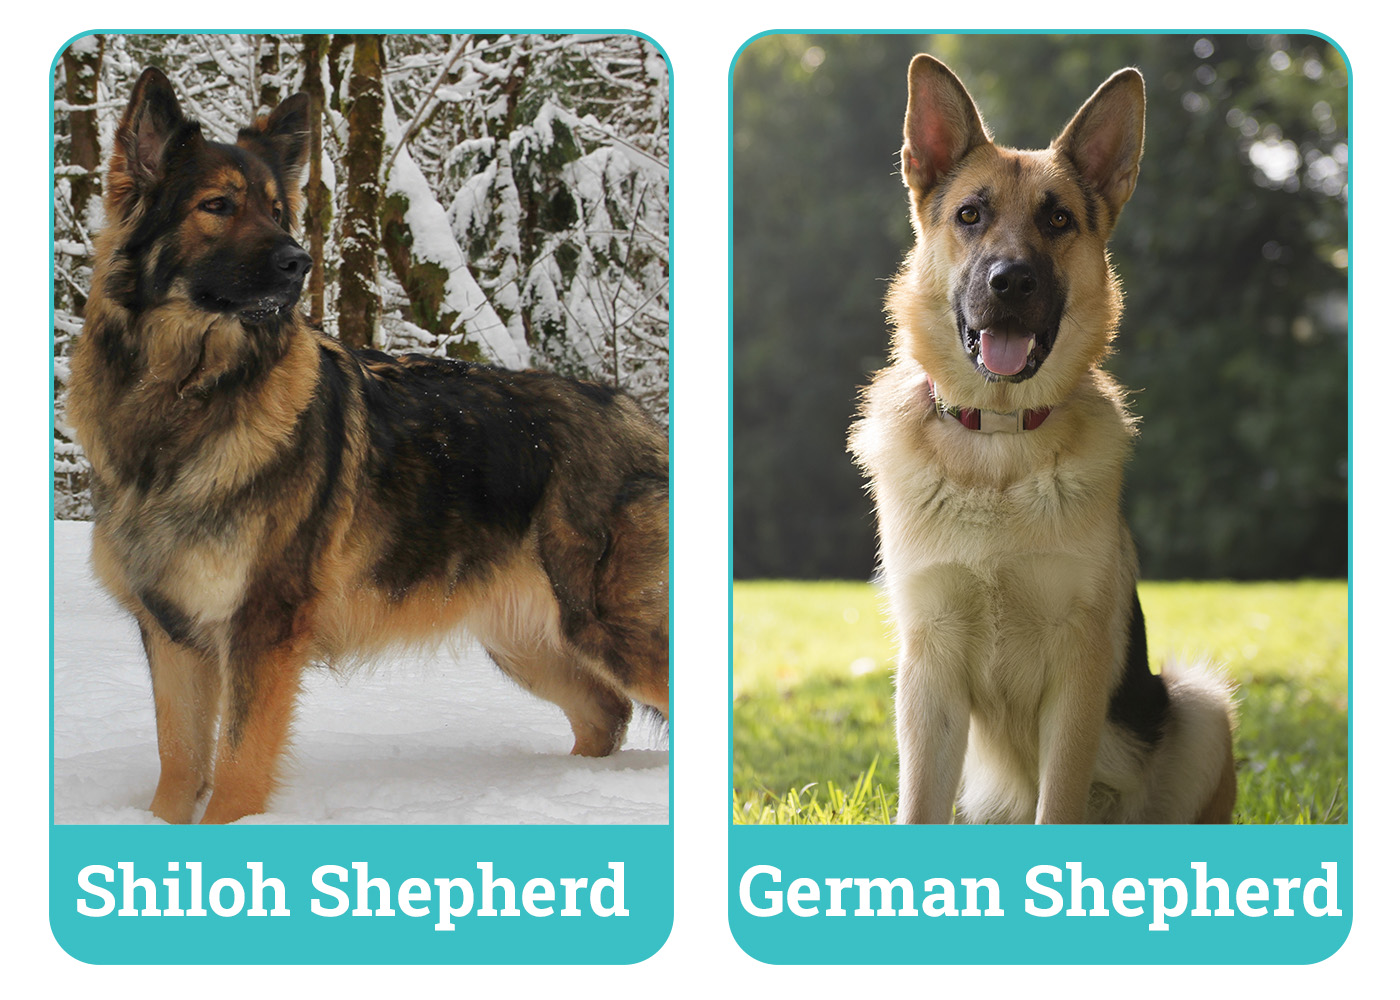 Shiloh Shepherd vs German Shepherd side by side